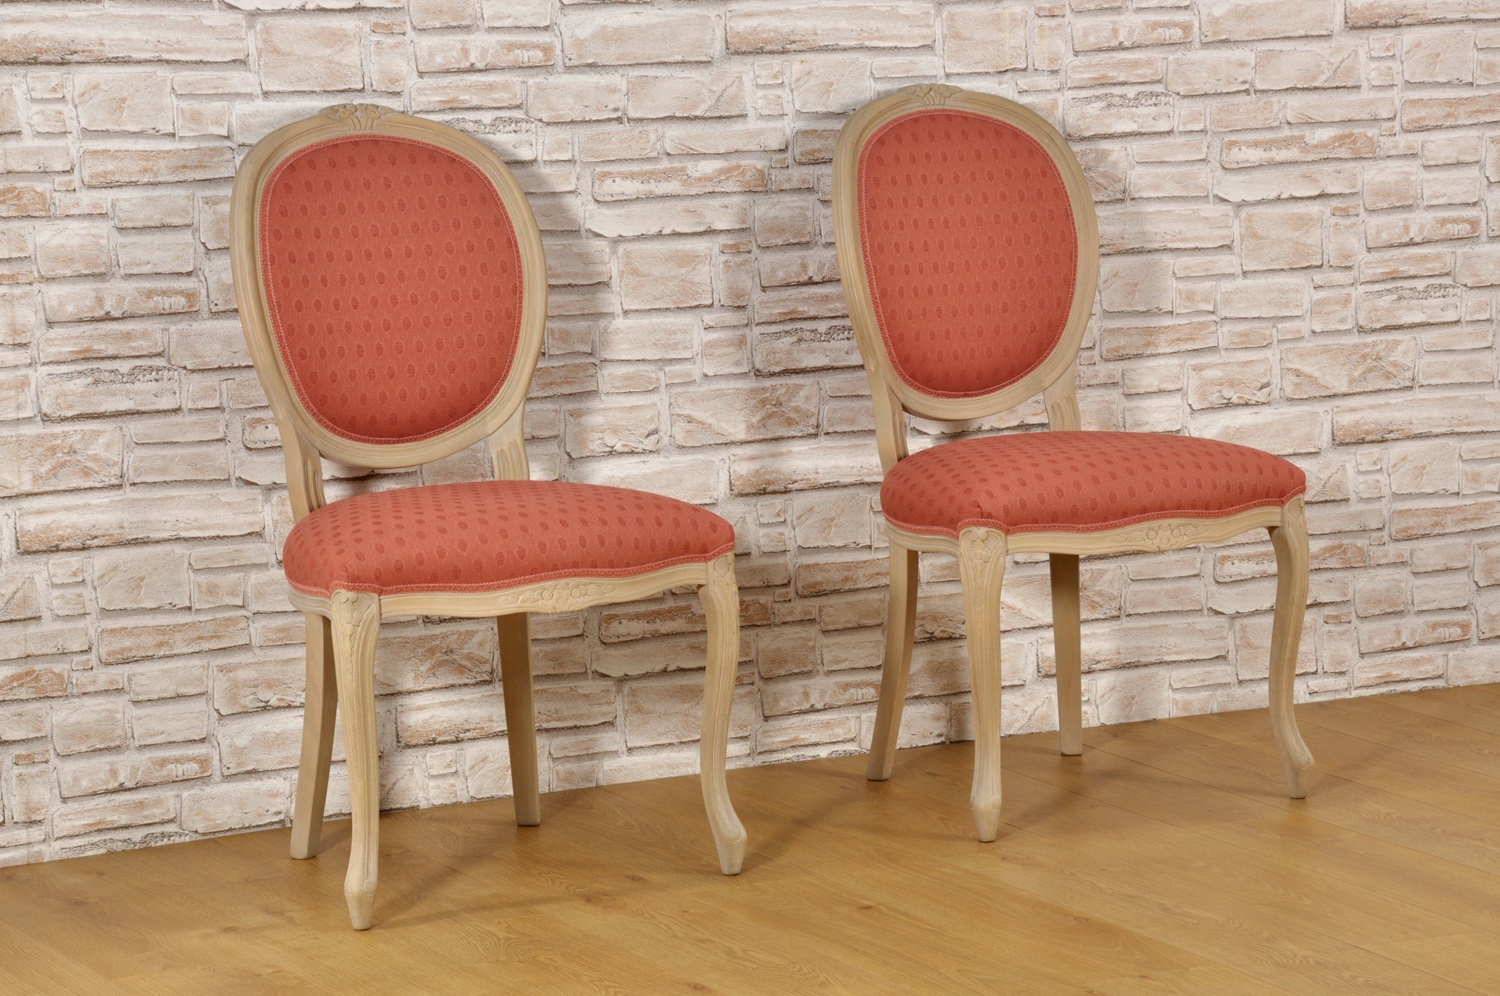 riproduzione sedie stile Luigi Filippo dell ottocento mosse e sagomate lucidate sbiancate nocciola naturale tappezzate a mano con tessuto in legno di faggio massiccio